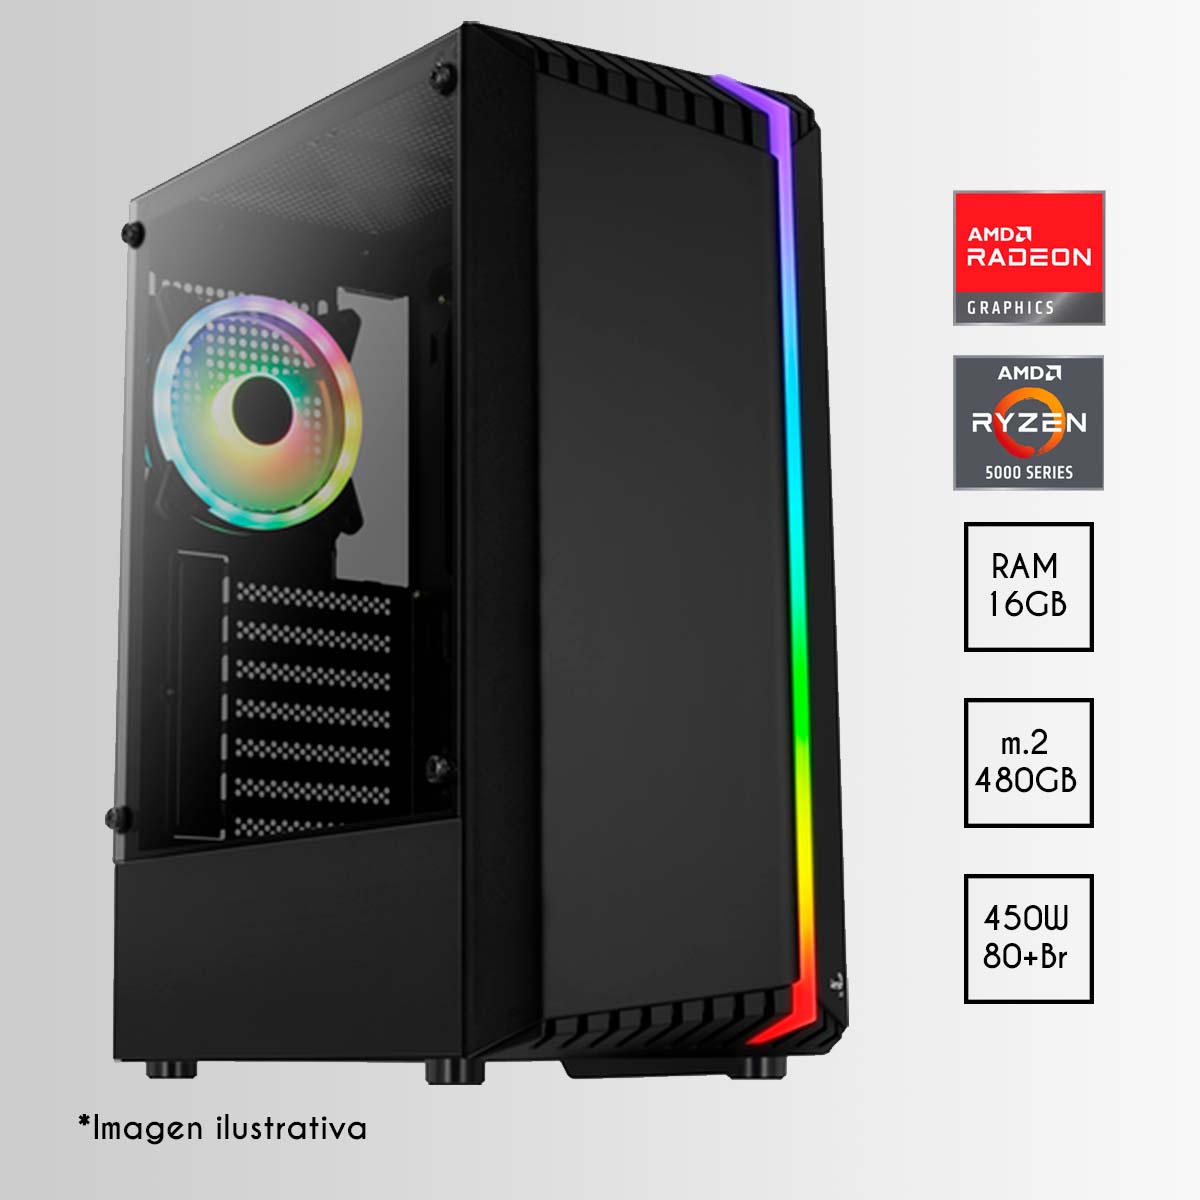 PC Gamer Bionic R5 | AMD Ryzen 5 5600G | 16 GB RAM RGB | 480GB NVME | 450W 80+BR